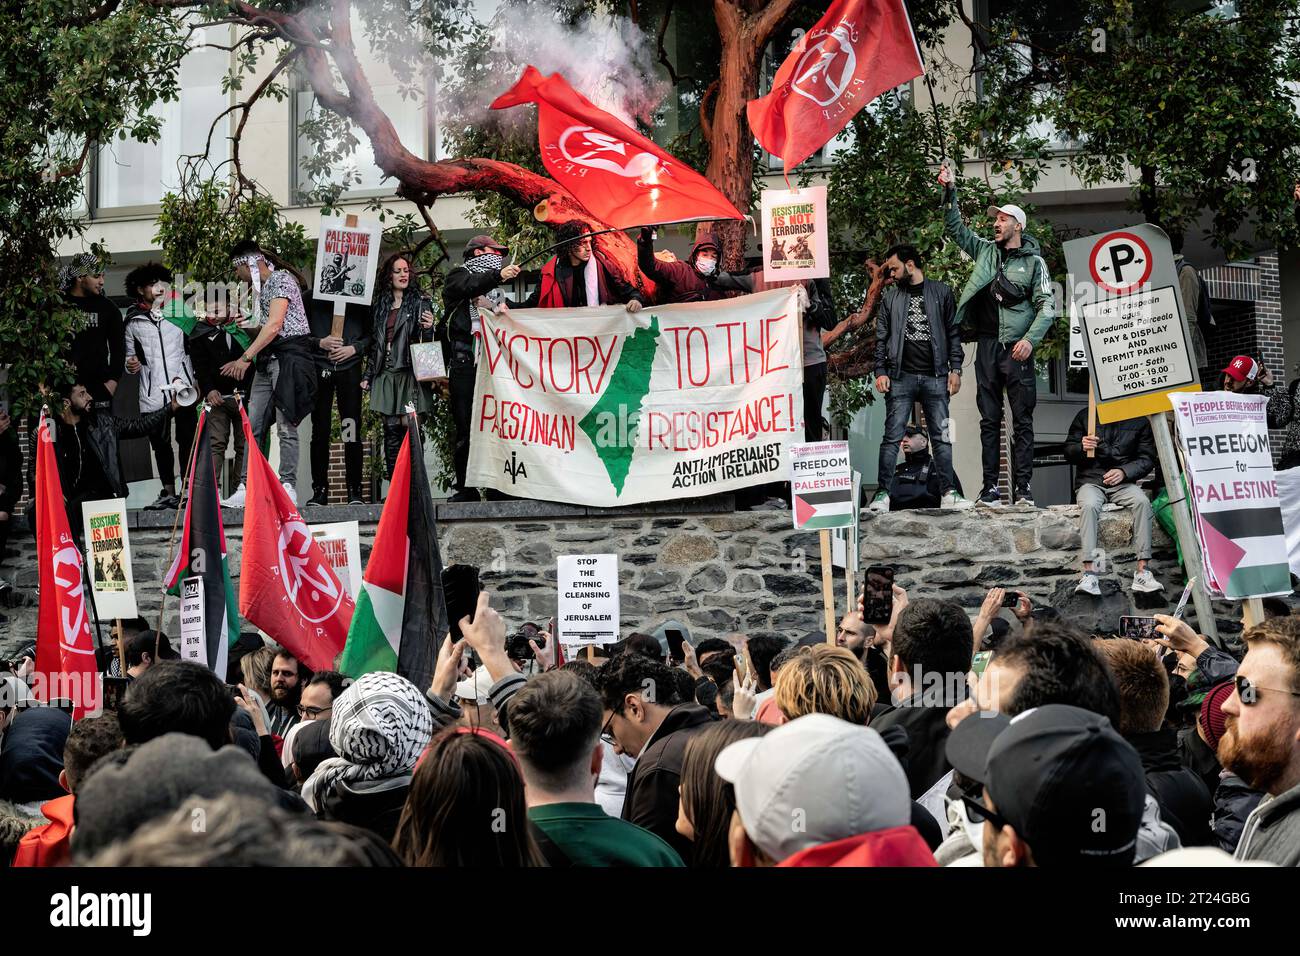 Mitglieder der palästinensischen und arabischen Gemeinschaft Irlands sowie Unterstützer und Aktivisten versammeln sich während der Demonstration mit Plakaten und einem Banner vor der israelischen Botschaft. Am Samstag, dem 14. Oktober, fand in Dublin ein dritter Tag der Proteste statt, der Solidarität mit dem palästinensischen Volk diente. Tausende von Menschen marschierten von der O'Connell Street durch die Stadt zur israelischen Botschaft, wo Sprecher der palästinensischen und syrischen Gemeinschaft über ihre Erfahrungen und aktuelle Nachrichten von Familienmitgliedern und Freunden in Gaza sowie von Mitgliedern der I.P.S.C. (Irland Palästina Solidar) berichteten Stockfoto